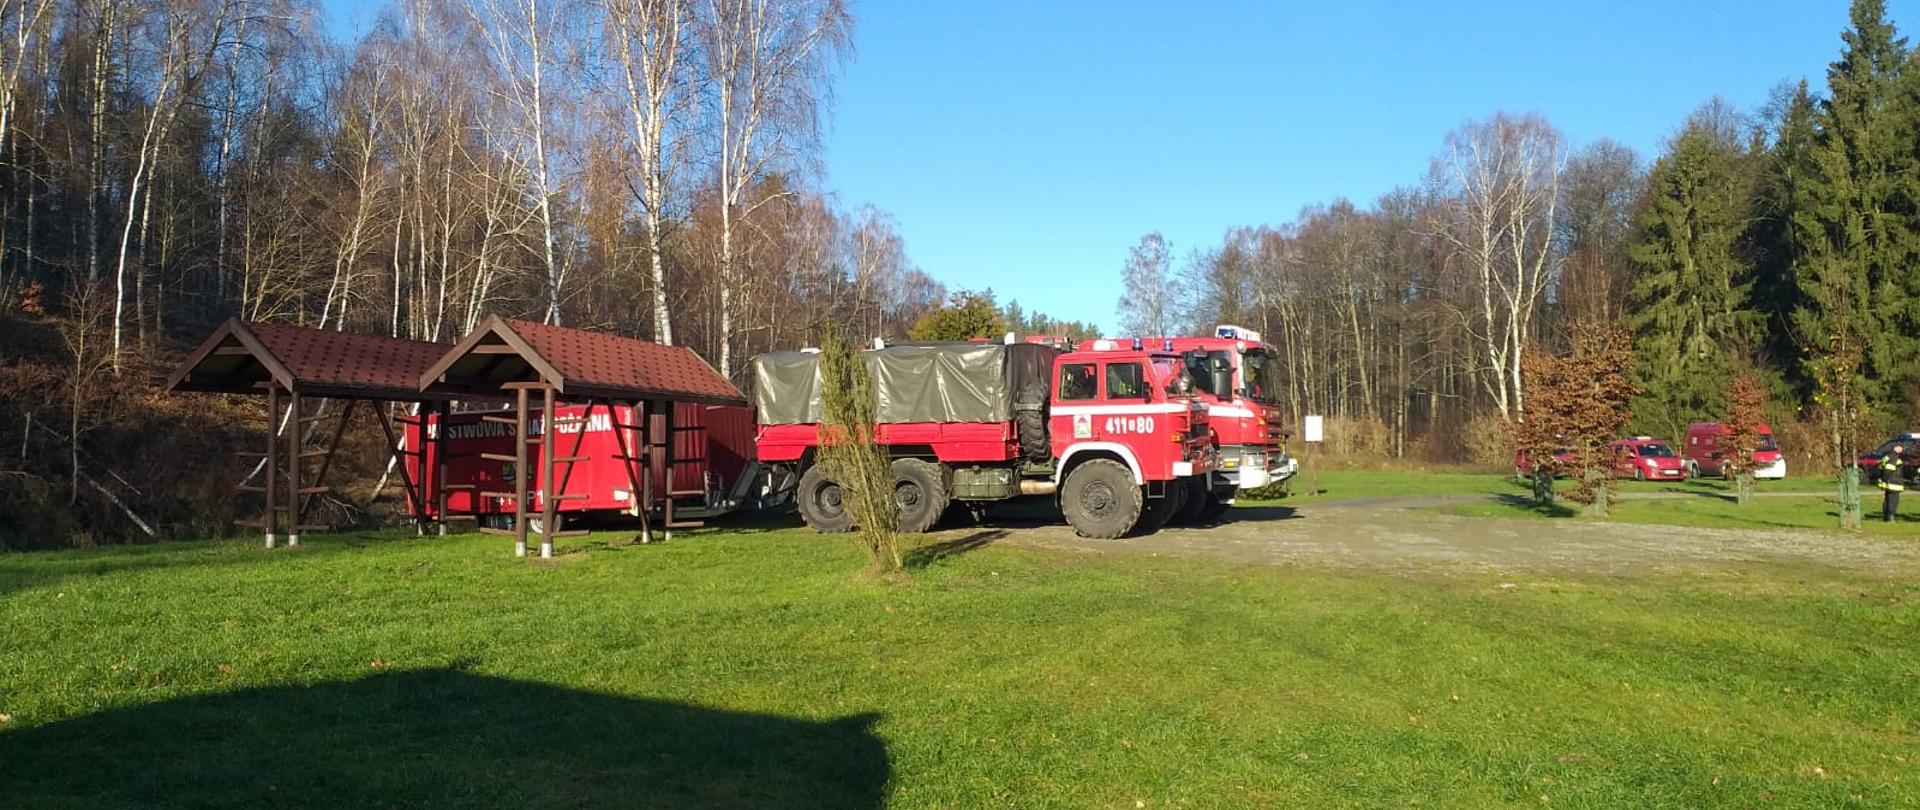 Na polanie w lesie stoją czerwone samochody strażackie. W tle las. Słoneczna jesienna pogoda.